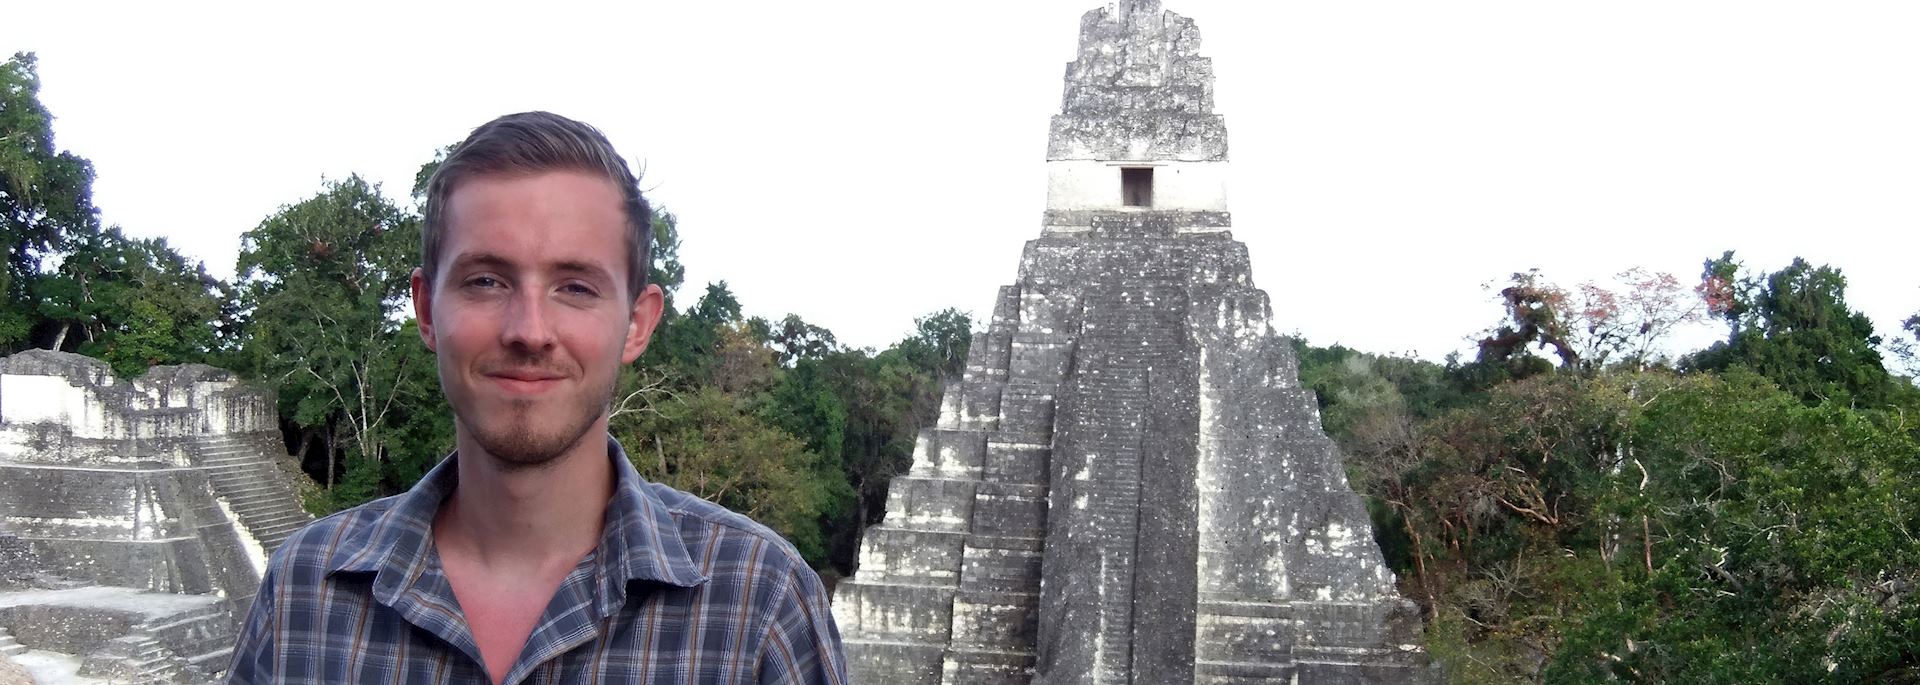 Tom visiting the temples at Tikal, Guatemala